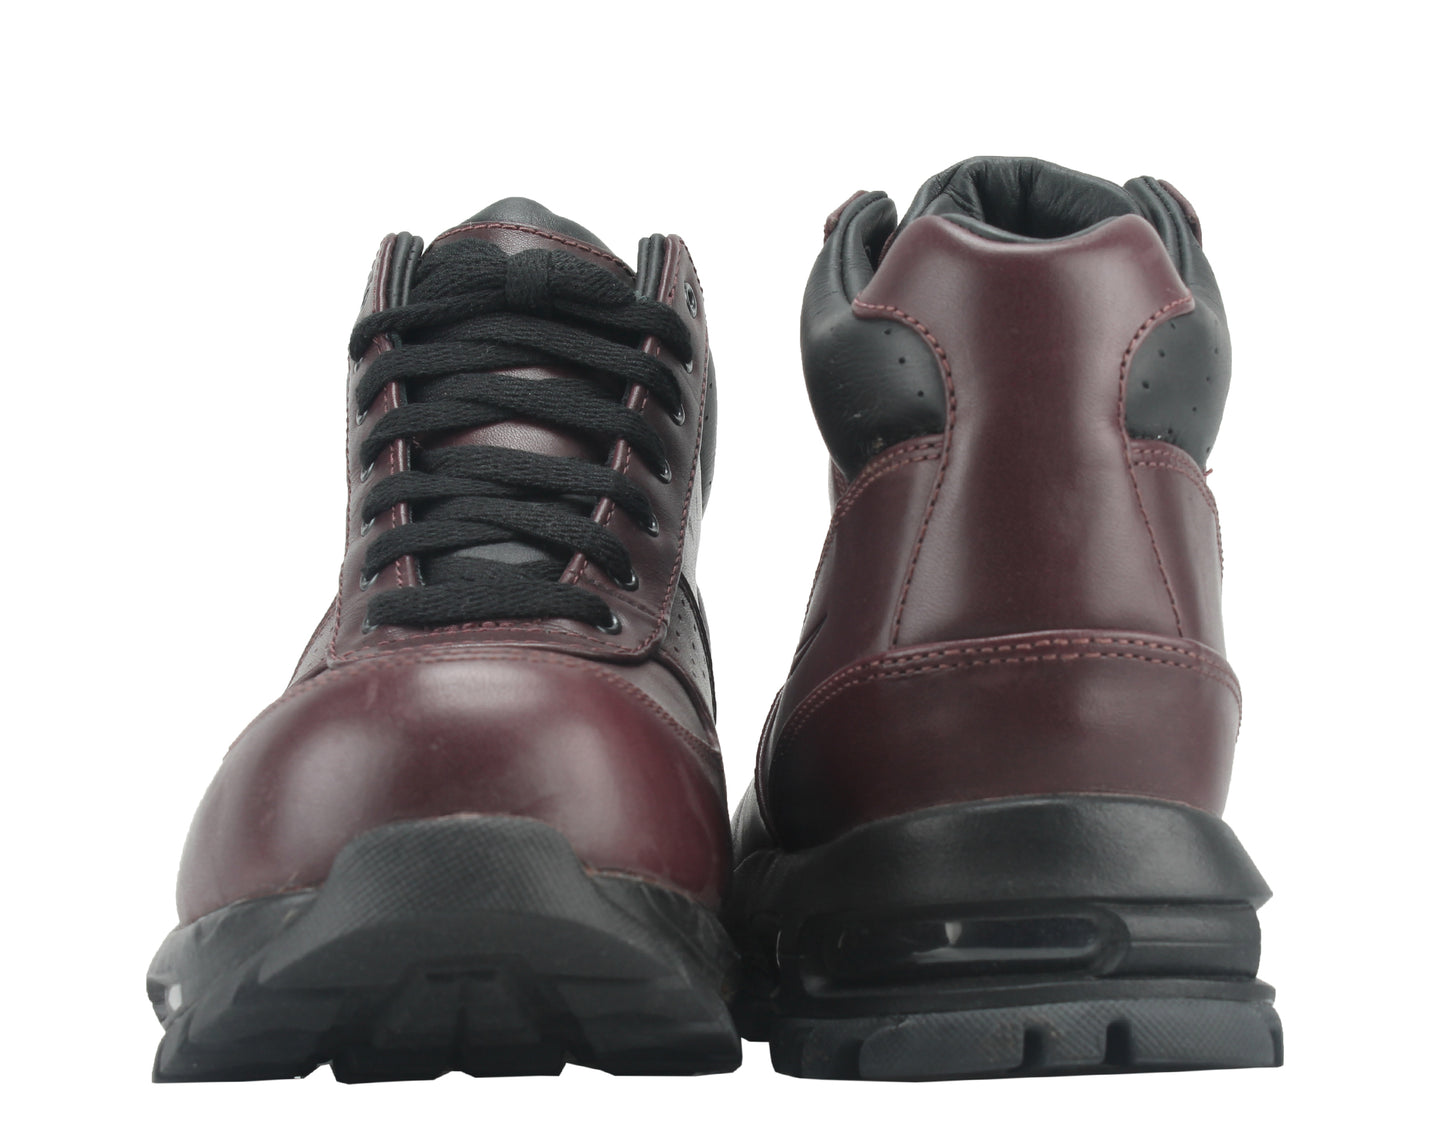 Nike Air Max Goadome ACG Deep Burgundy/Black Men's Boots 865031-601